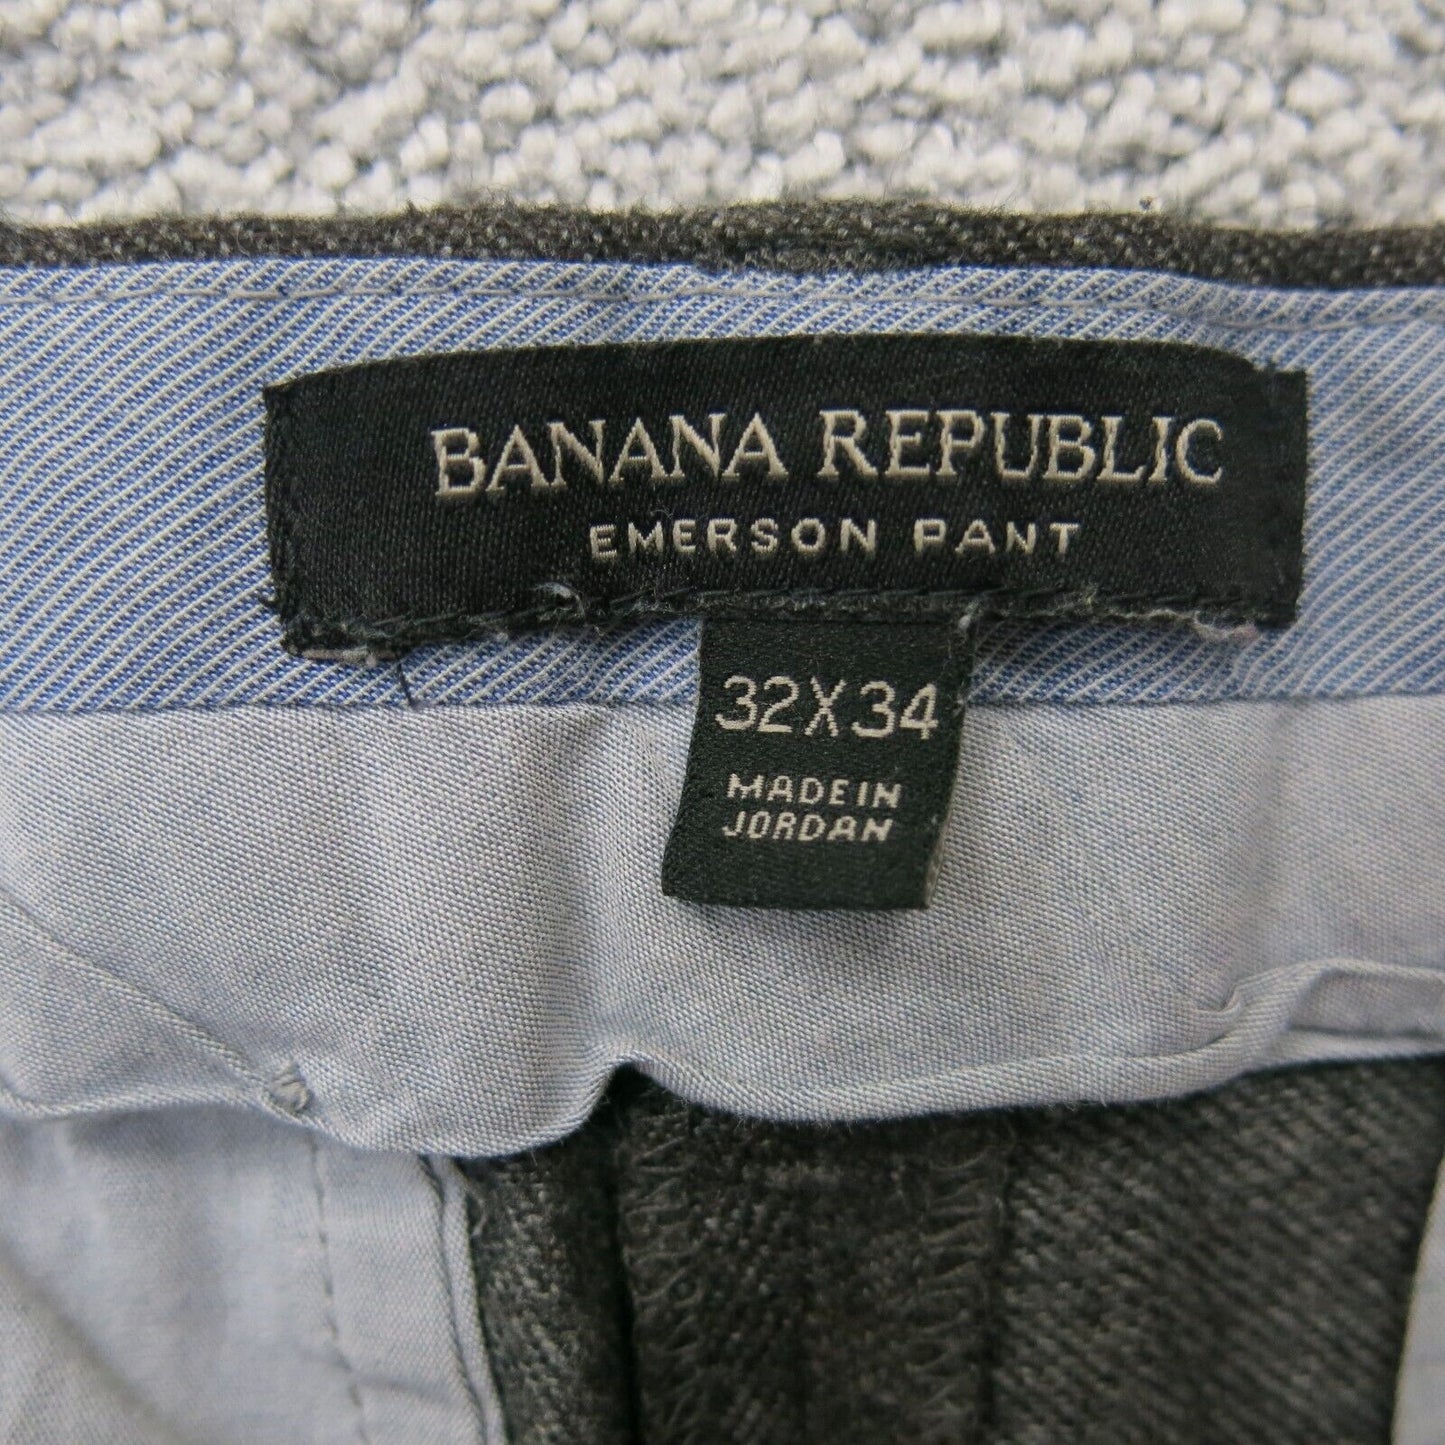 Banana Republic Men Emerson Pant Mid Rise Pocket Charcoal Black Size W32XL34